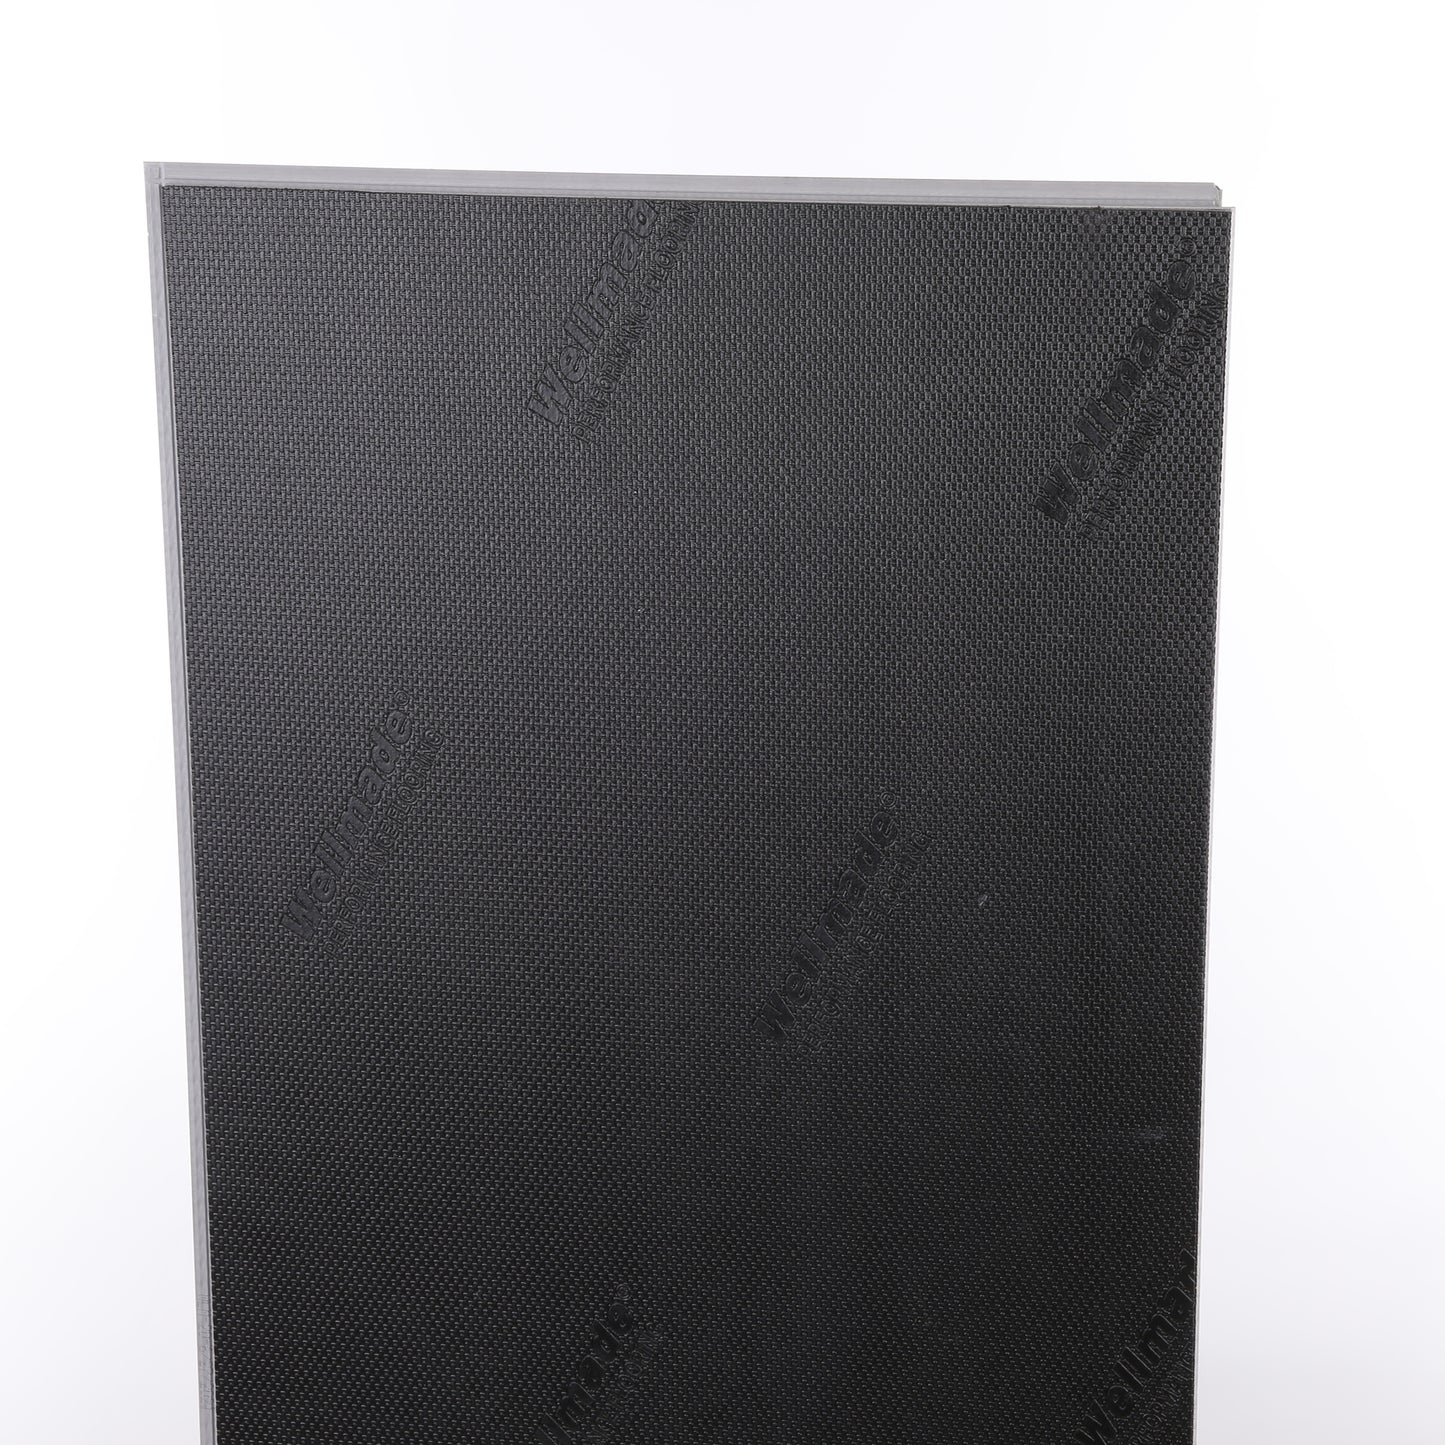 6mm Piazza Travertine HDPC® Waterproof Luxury Vinyl Tile Flooring 12 in. Wide x 24 in. Long